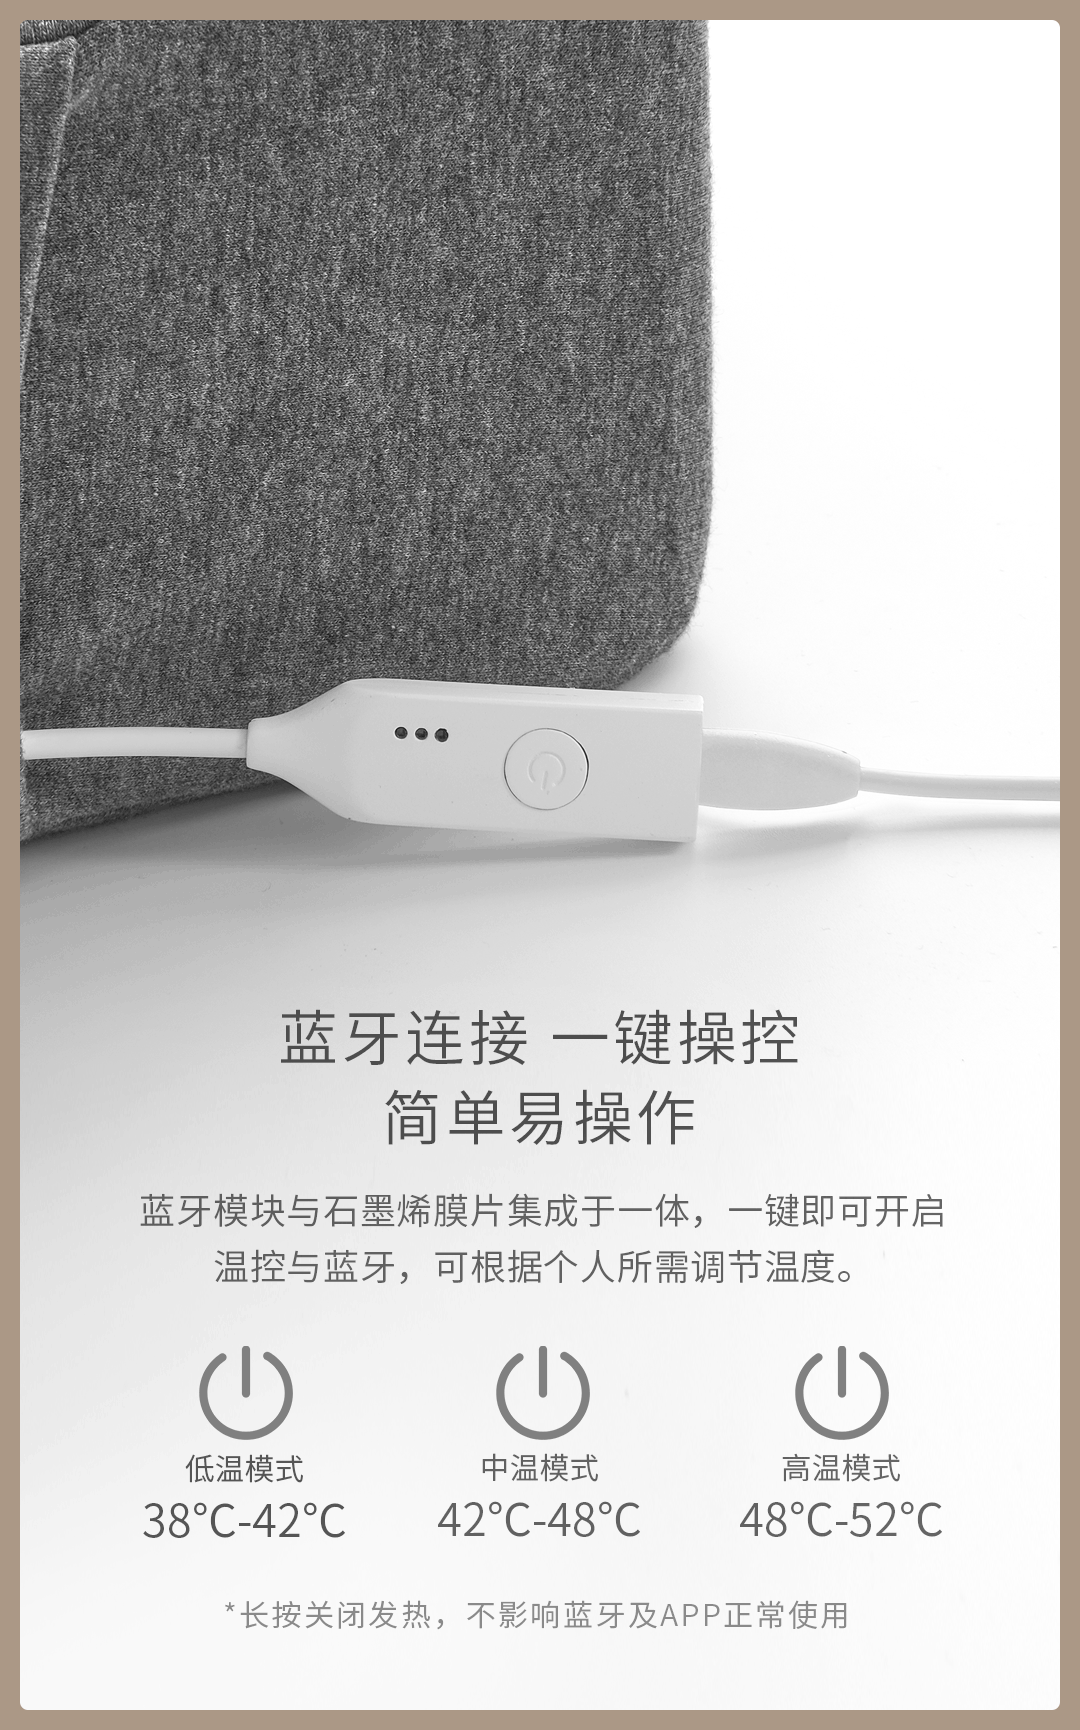 Xiaomi ra mắt gối
thông minh đa chức năng: Tích hợp loa bluetooth, điều khiển
nhiệt độ, theo dõi giấc ngủ, kiêm luôn đồng hồ báo thức, giá
1 triệu đồng